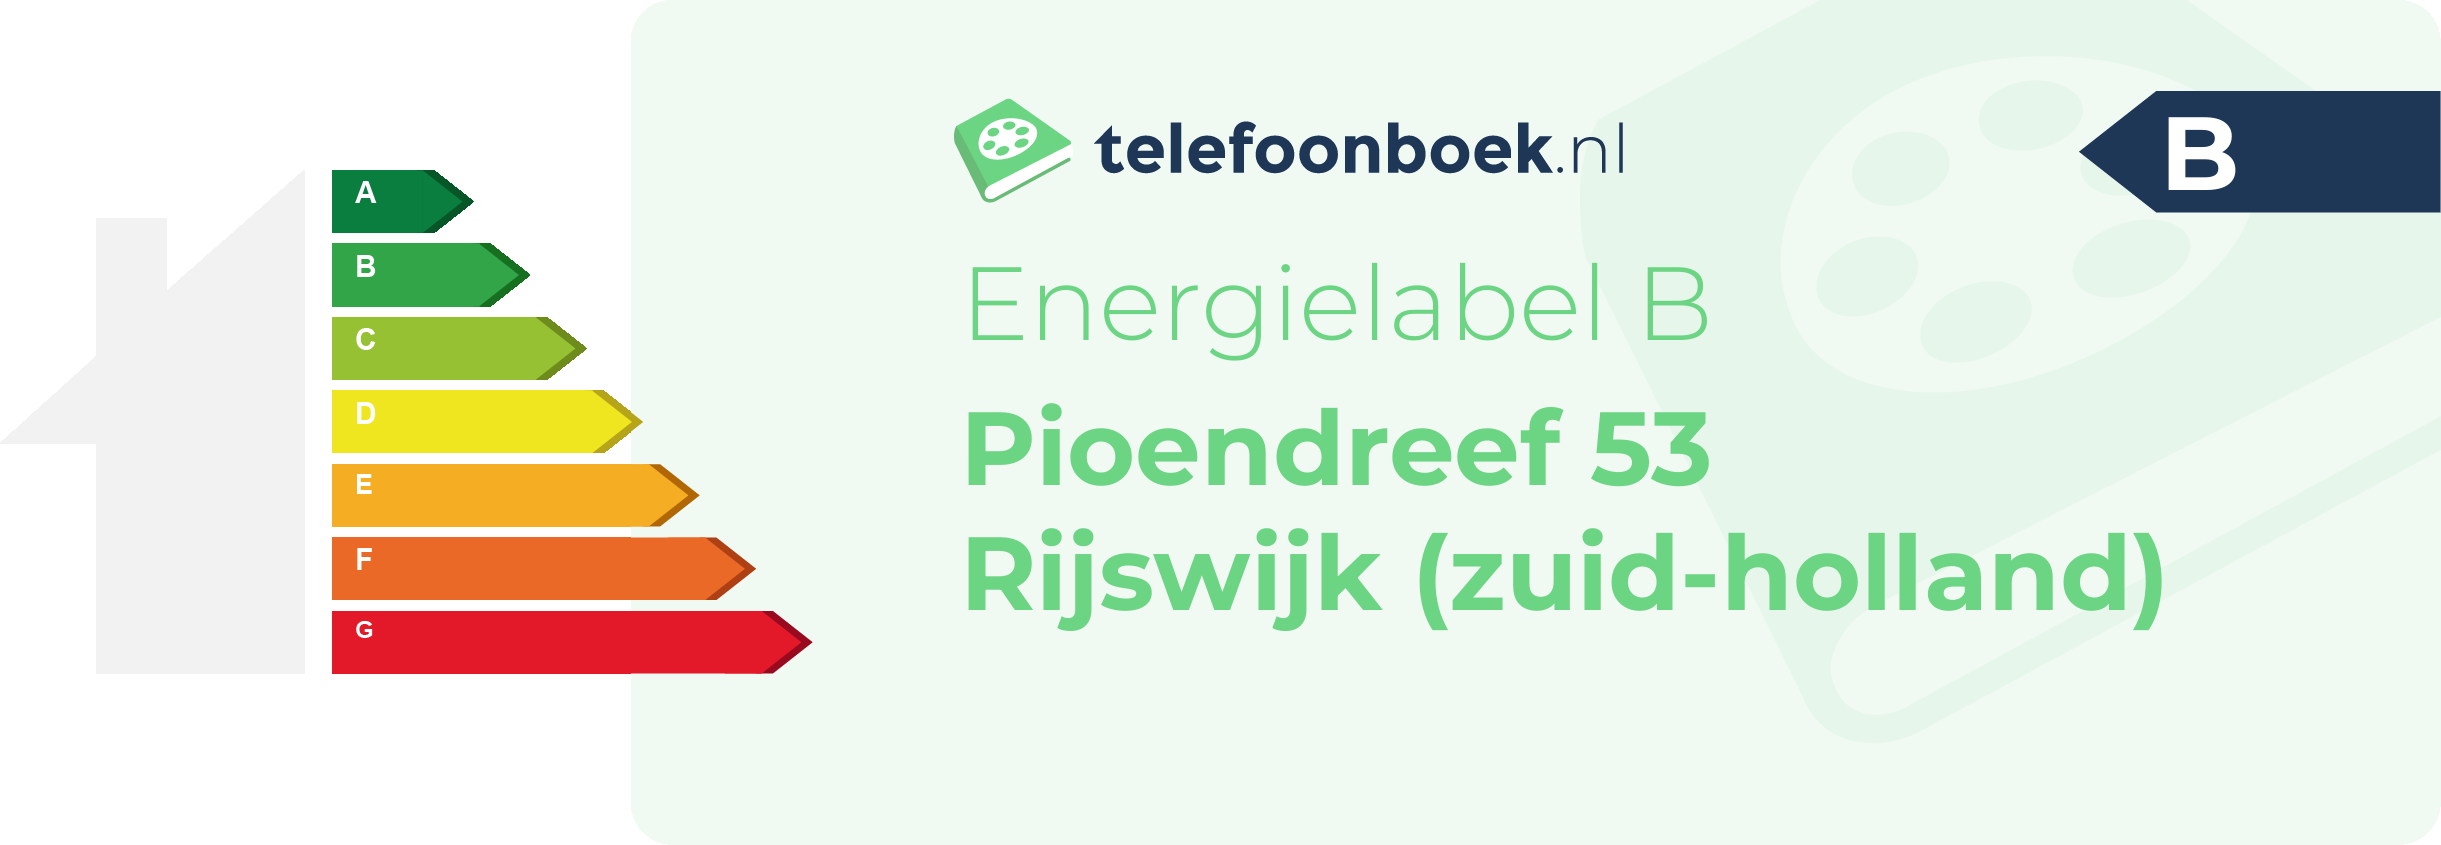 Energielabel Pioendreef 53 Rijswijk (Zuid-Holland)